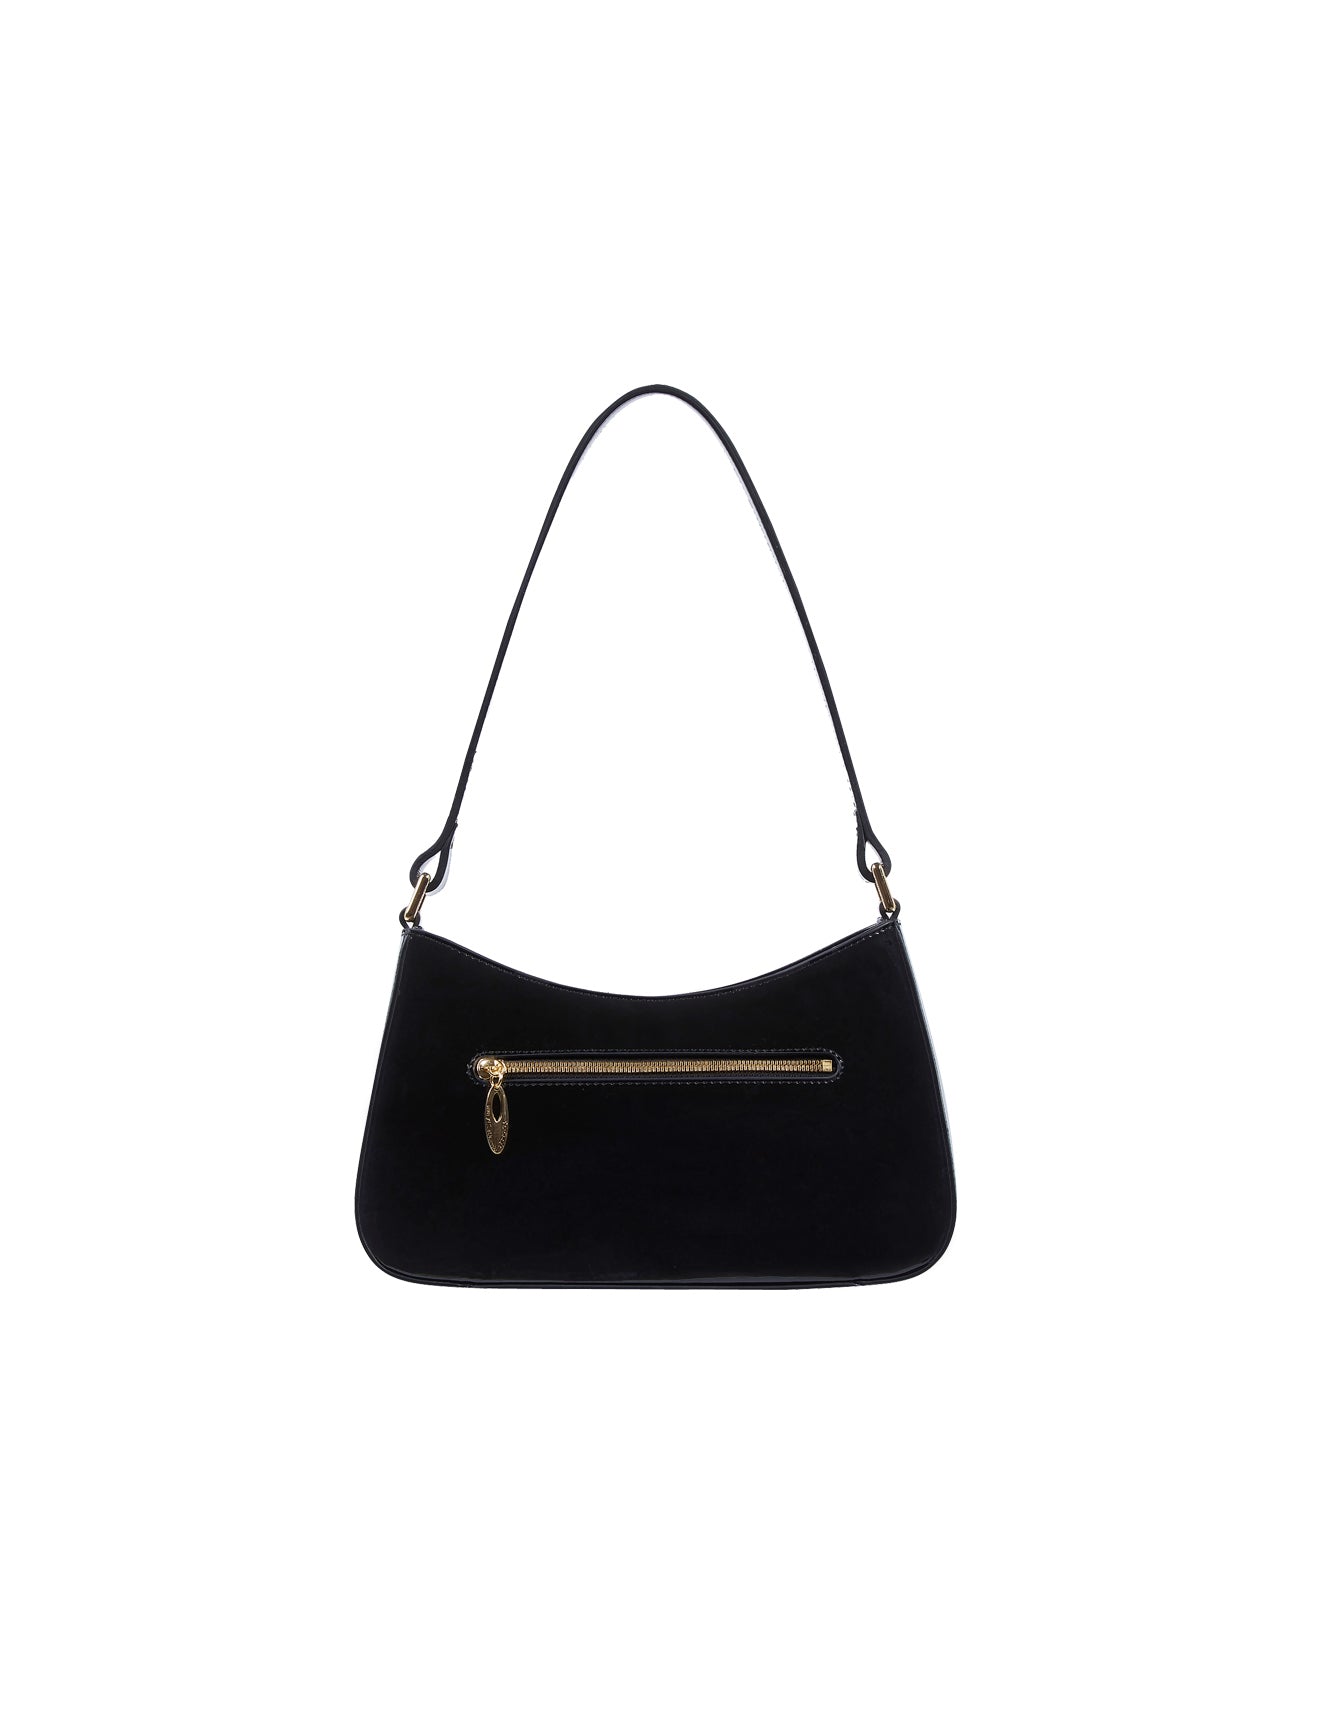 Serenade - Allura SV1-0821 Patent Leather Handbag - Black-3